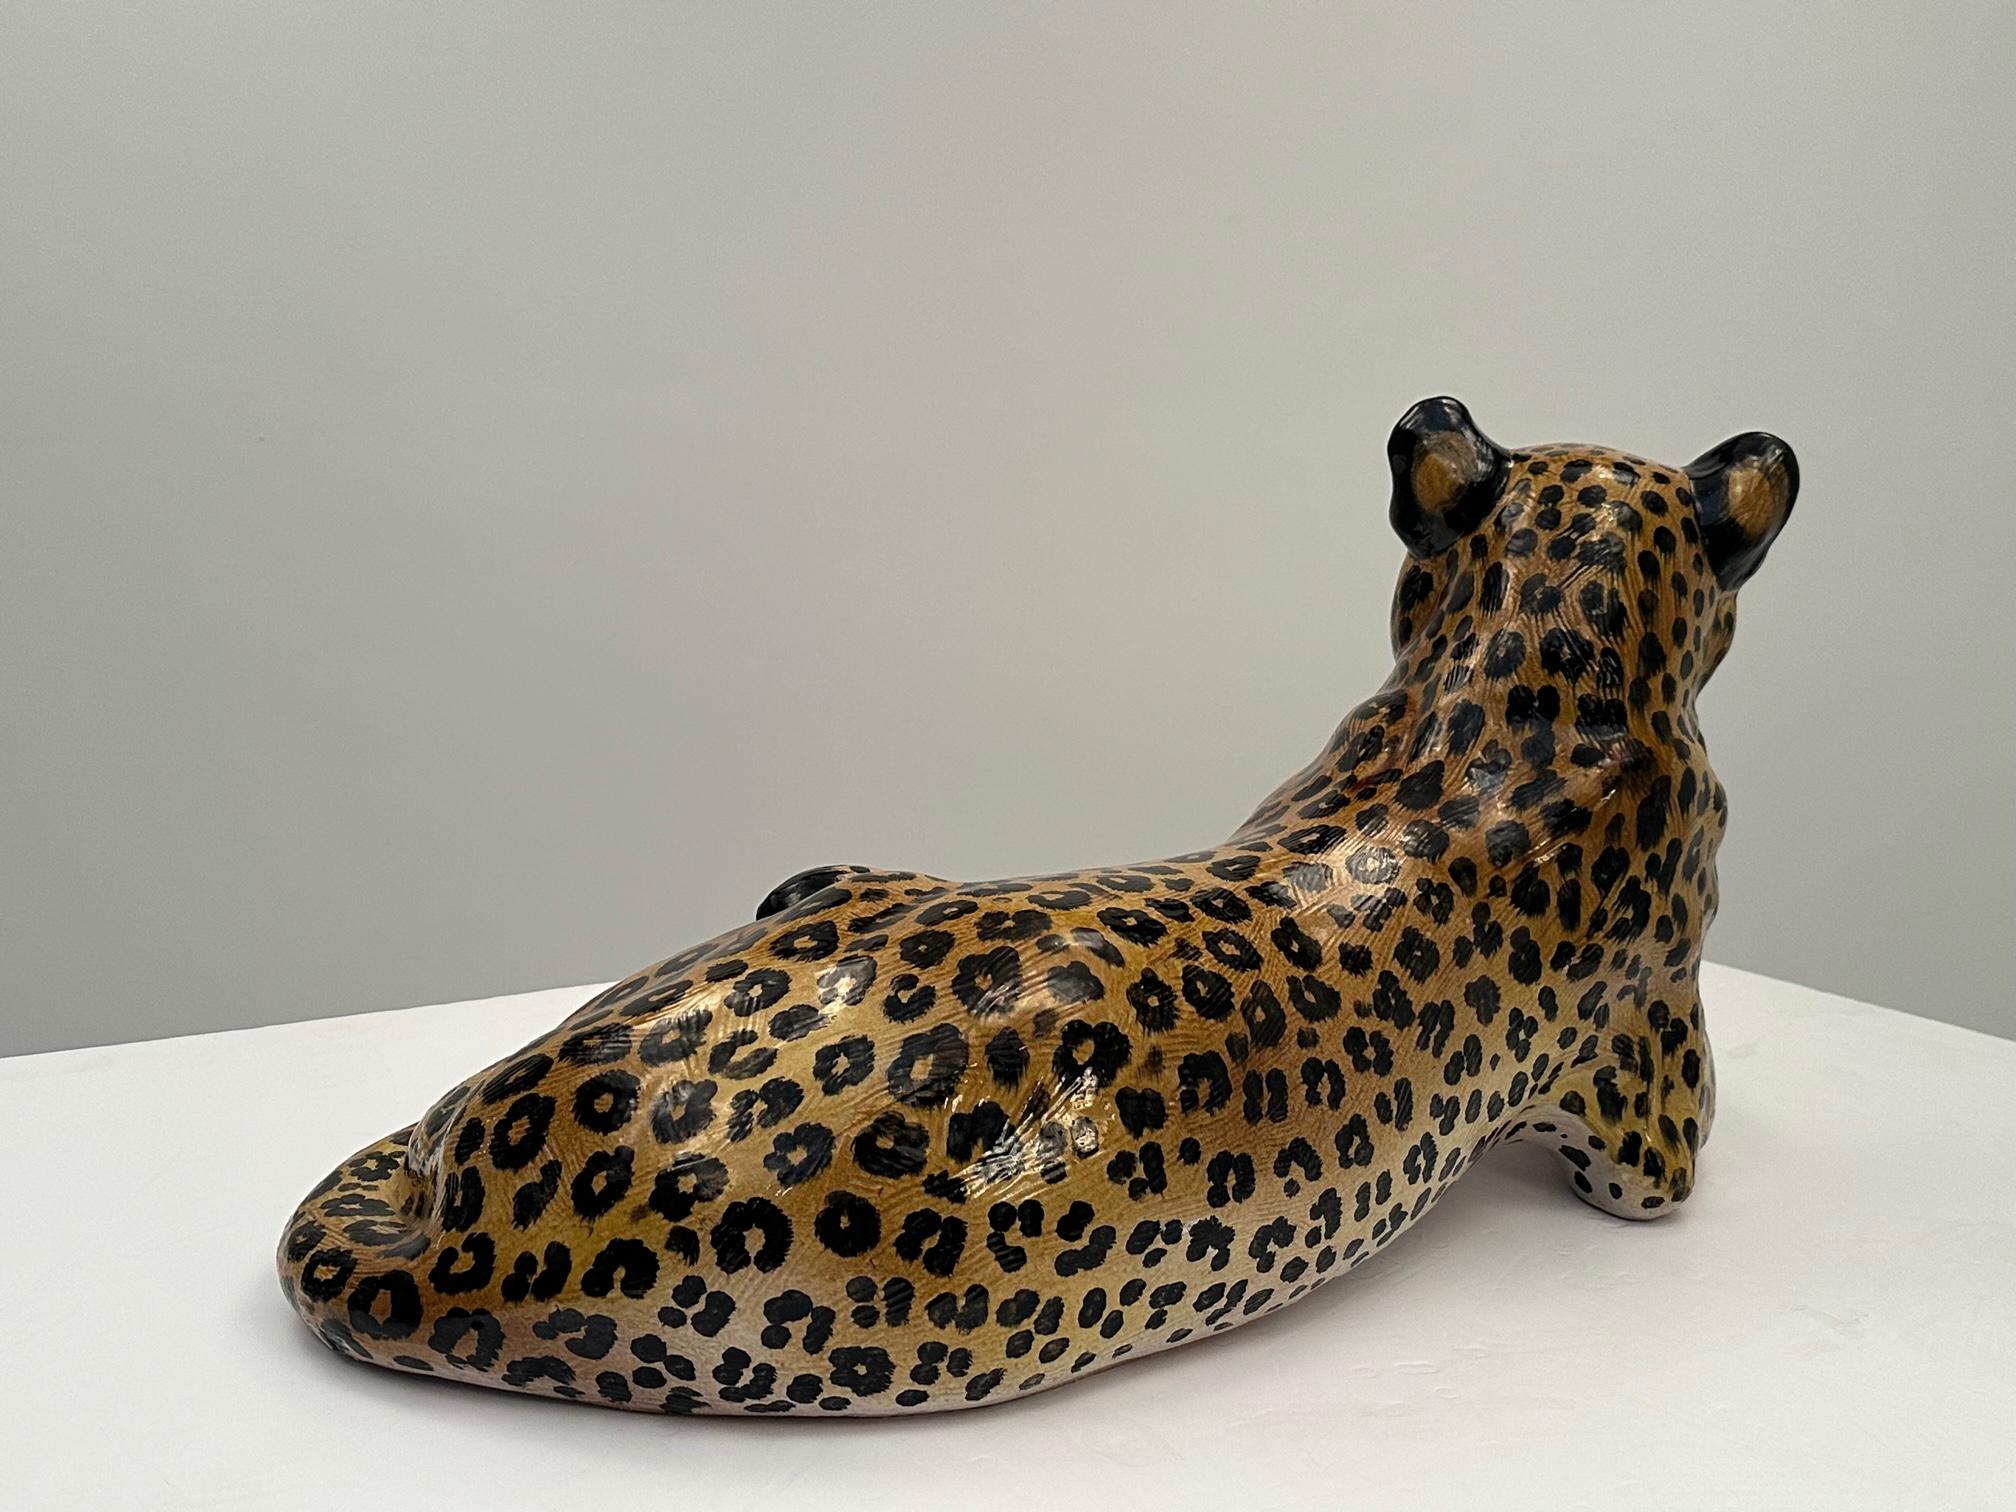 Impressionnante sculpture italienne de léopard en terre cuite peinte et émaillée, en position allongée.  Les détails du visage, des pattes, de la queue et, bien sûr, du pelage tacheté sont superbes !